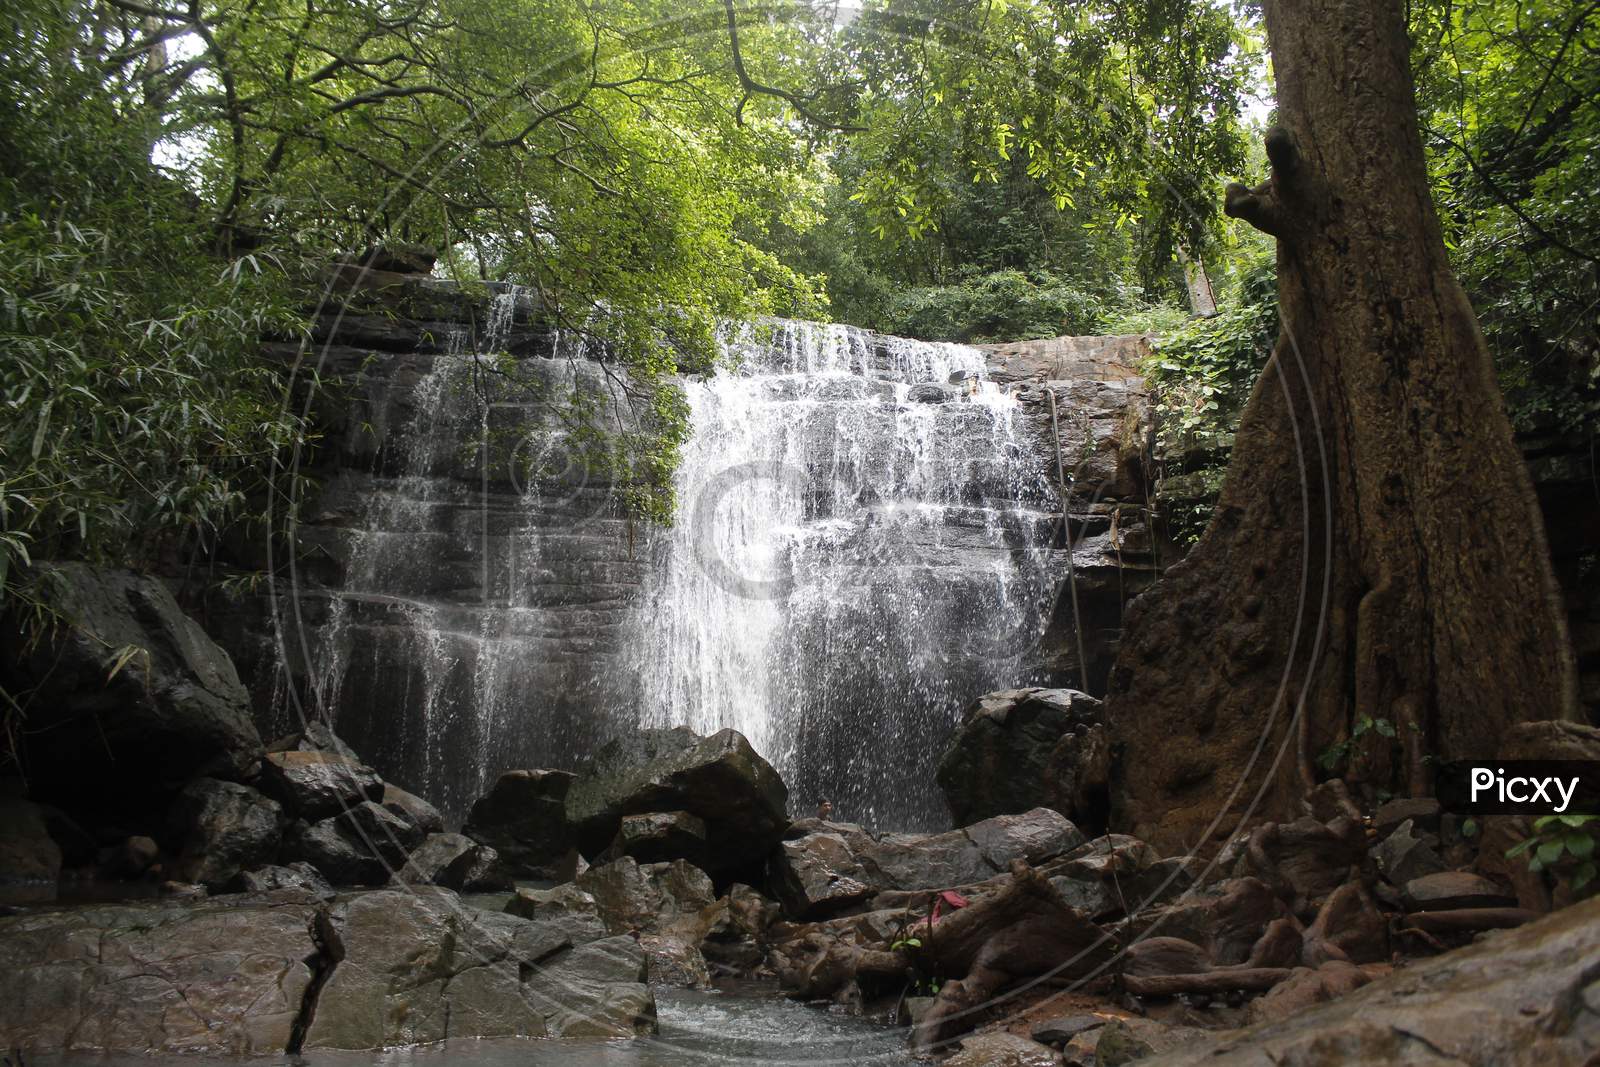 Bheemunipadam waterfalls  gudur mandal near narsampet in warangal district